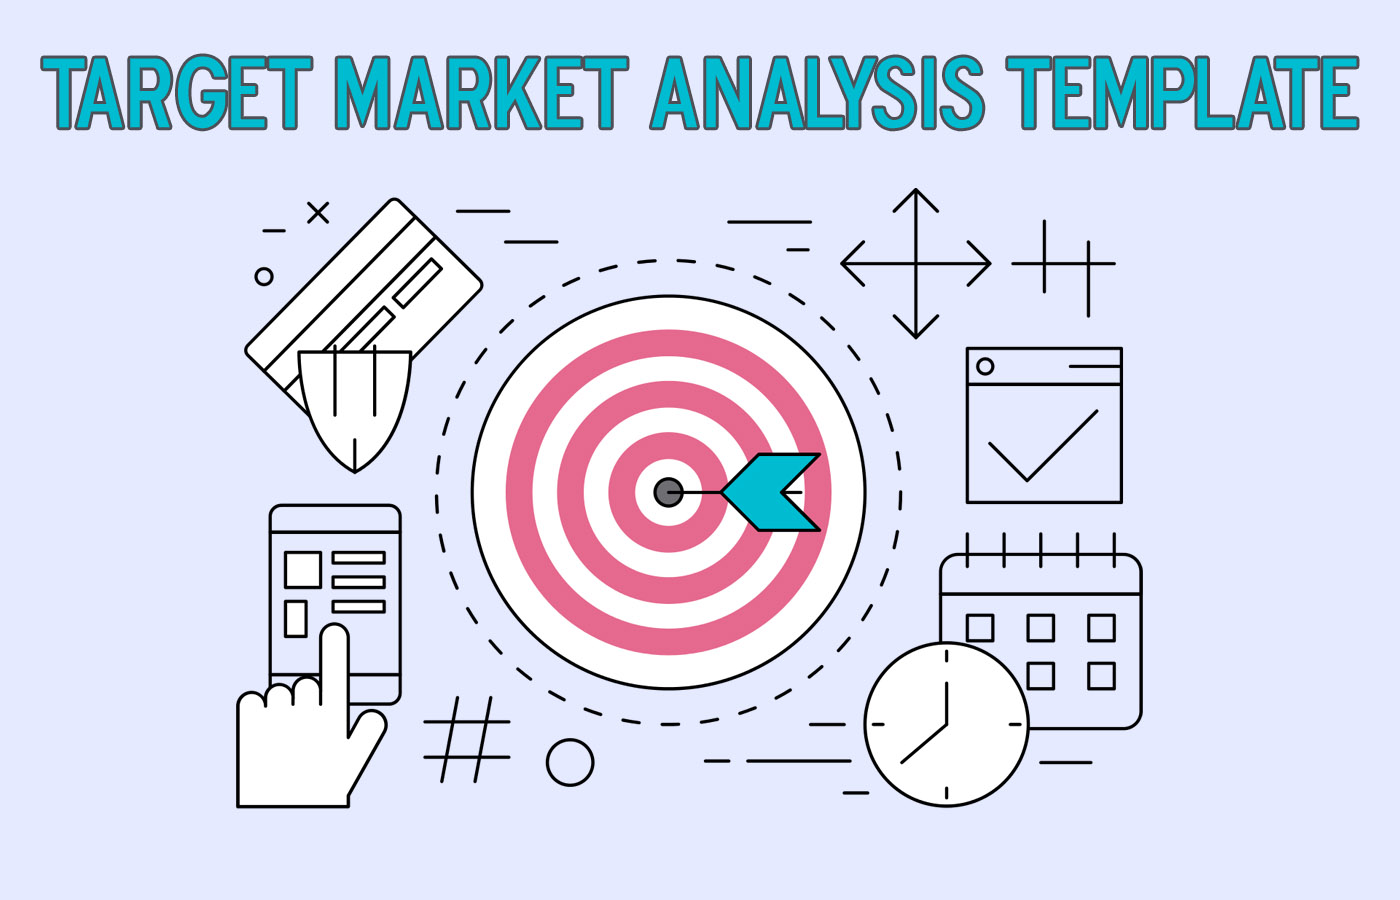 Example of Target Market Analysis